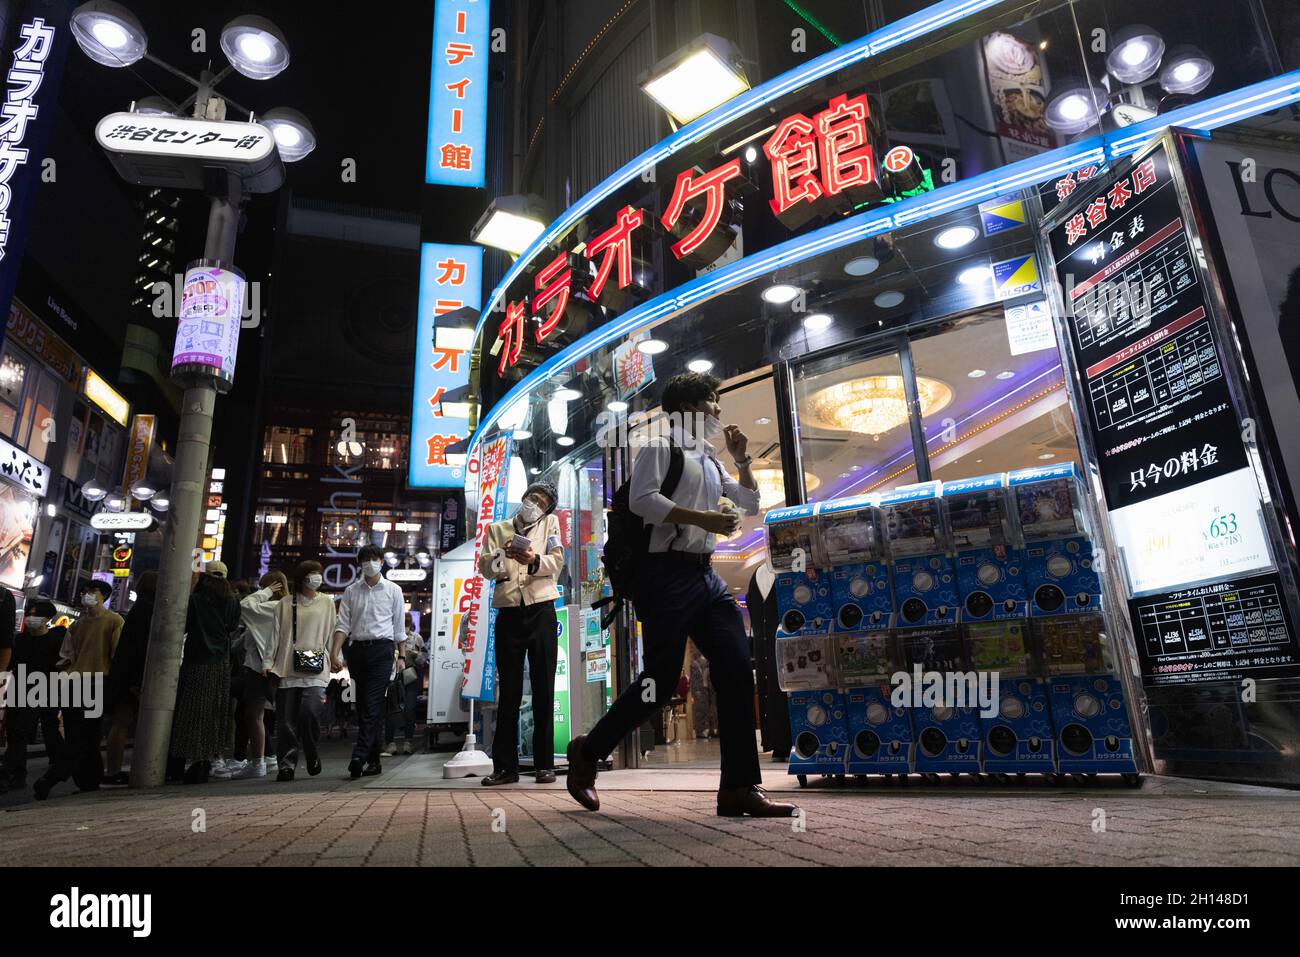 Ein Mann mit Gesichtsmaske geht an einem Karaoke-Salon im Shibuya-Viertel in Tokio vorbei.das Nachtleben im Unterhaltungsviertel von Tokio Shibuya kehrt wieder zur Normalität zurück, nachdem der mit dem Coronavirus verbundene Ausnahmezustand in Tokio aufgehoben wurde. Restaurants und Bars können abends geöffnet sein und wieder Alkohol servieren. (Foto von Stanislav Kogiku / SOPA Images/Sipa USA) Stockfoto